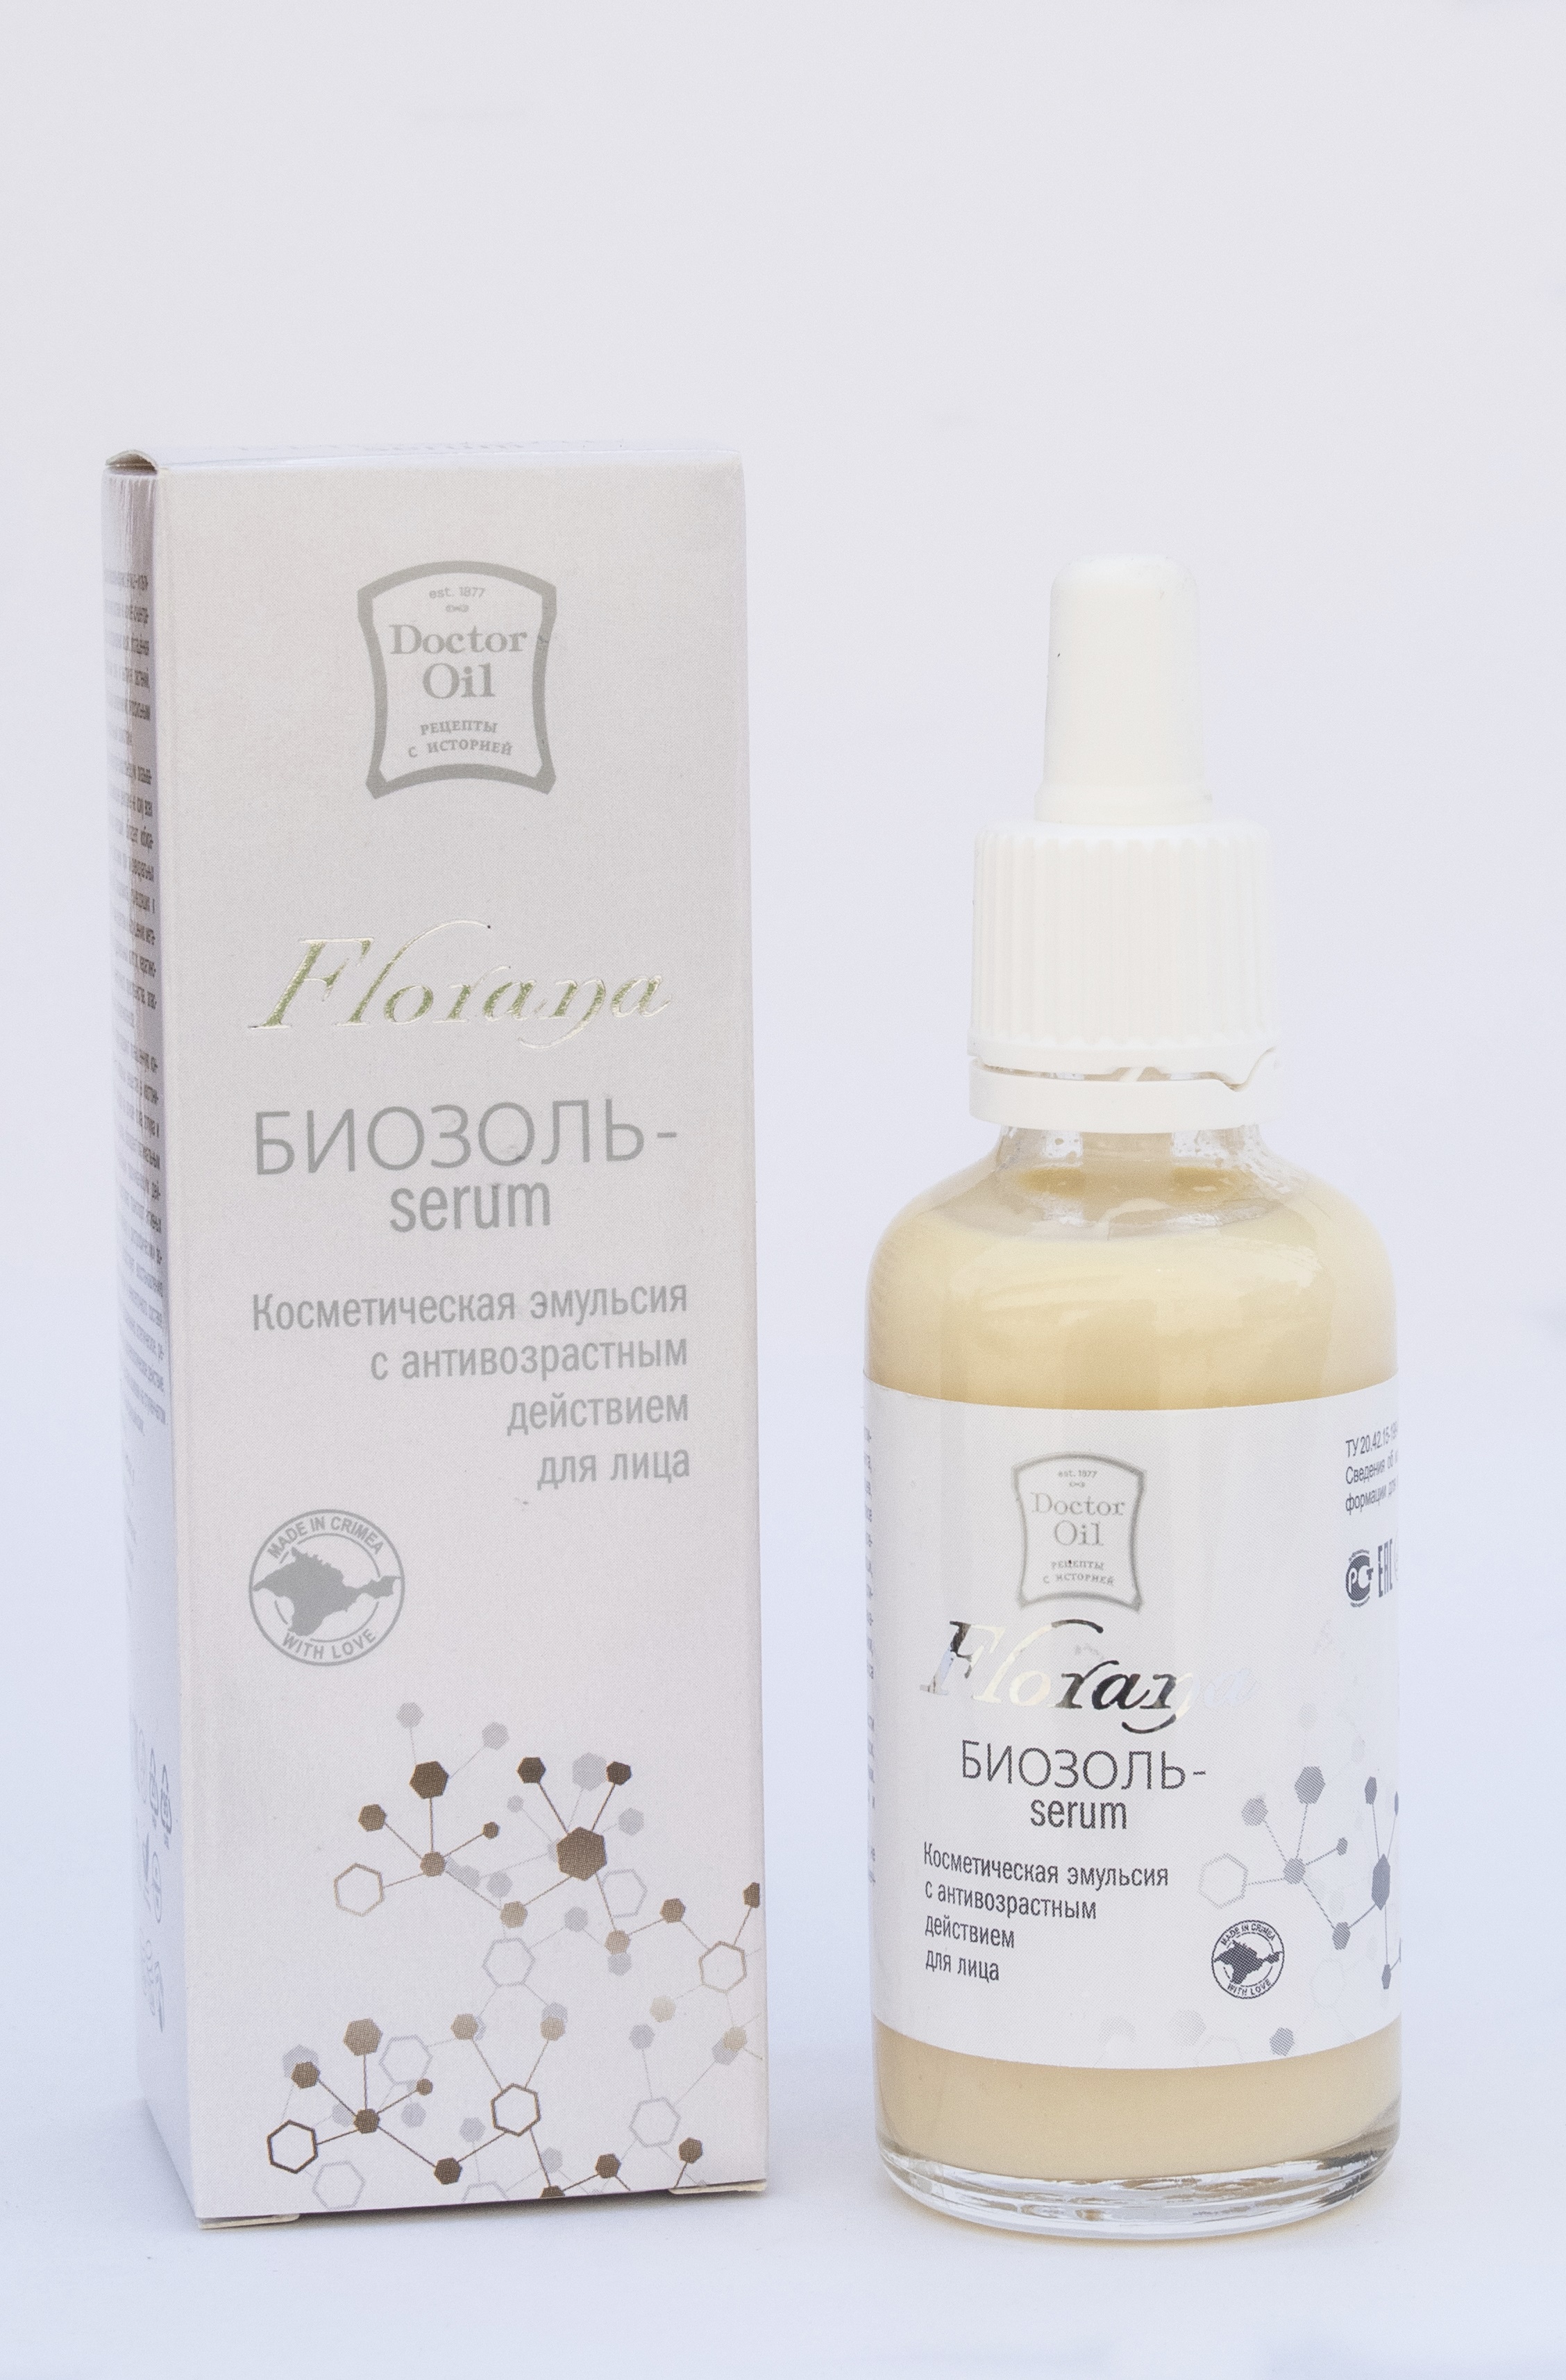 Doctor Oil Florana Биозоль-serum косметическая эмульсия с антивозрастным действием для лица 50 мл.